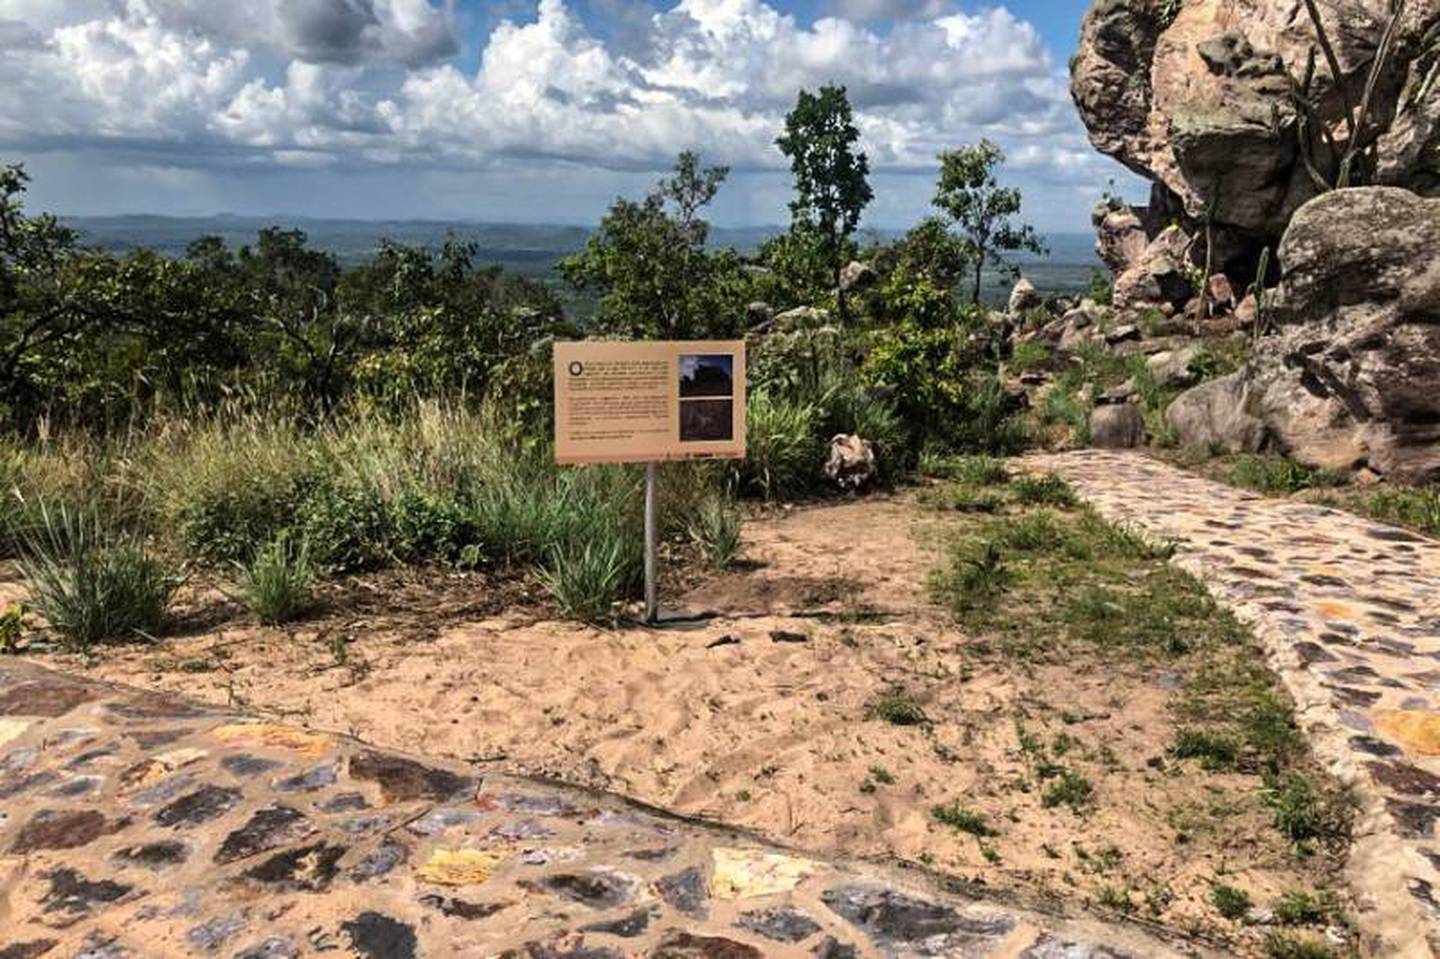 El Parque Estatal Monte Alegre, ubicado en la orilla norte del Amazonas en el estado brasileño de Pará, alberga una de las concentraciones de arte rupestre más grandes y antiguas de la cuenca del Amazonas.dfd